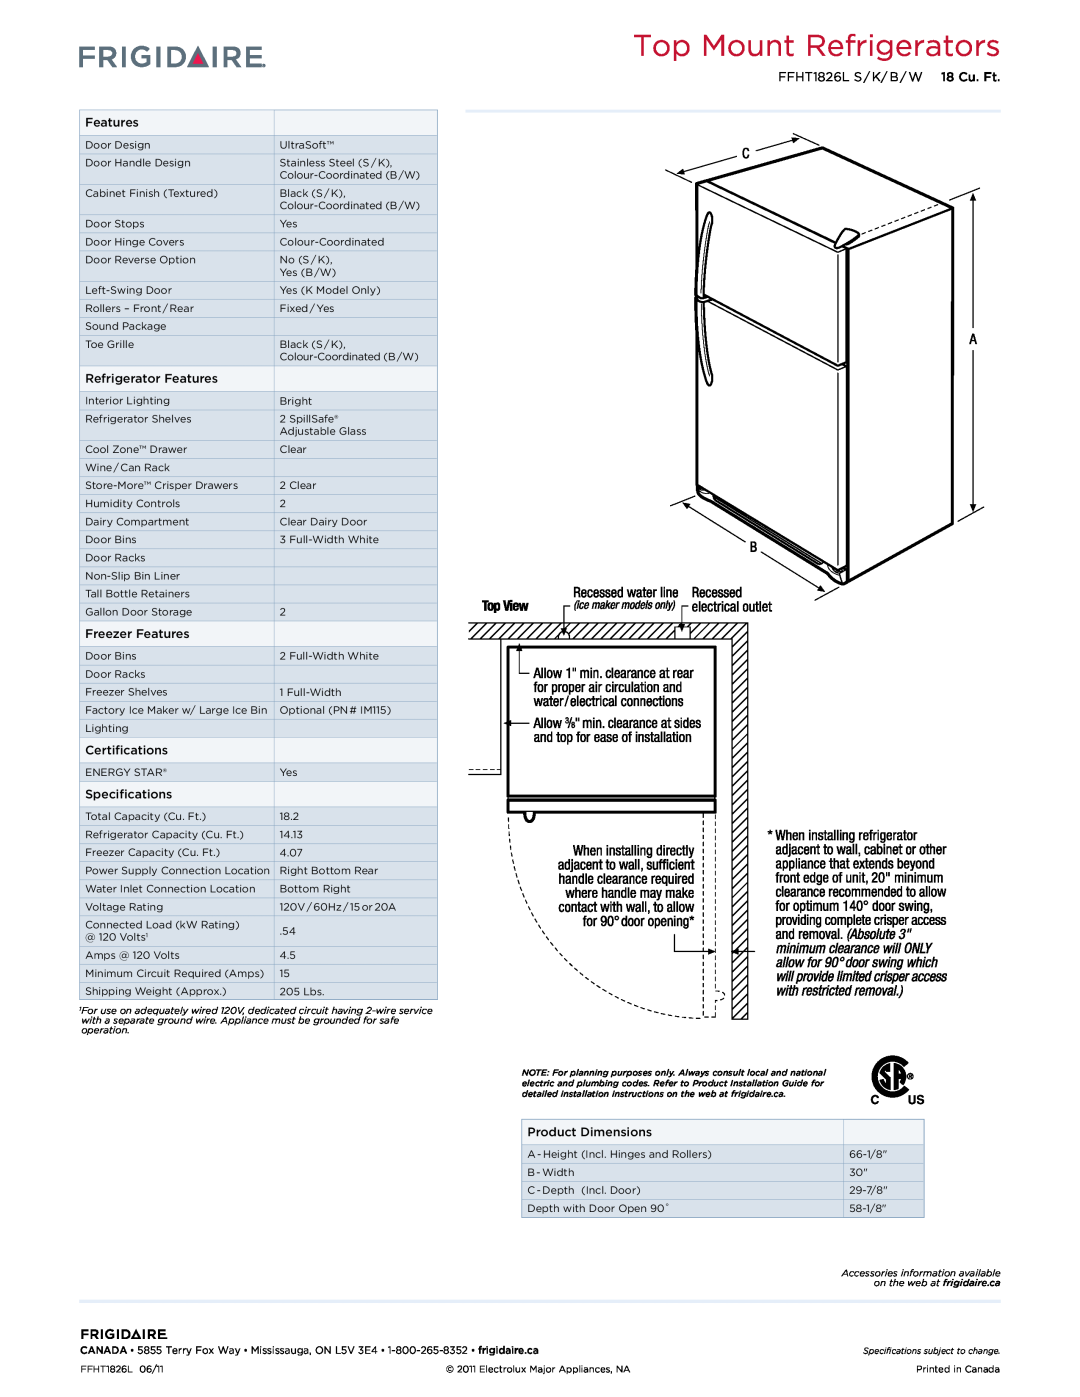 Frigidaire IM115 dimensions Top Mount Refrigerators, FFHT1826L S / K/ B / W 18 Cu. Ft 